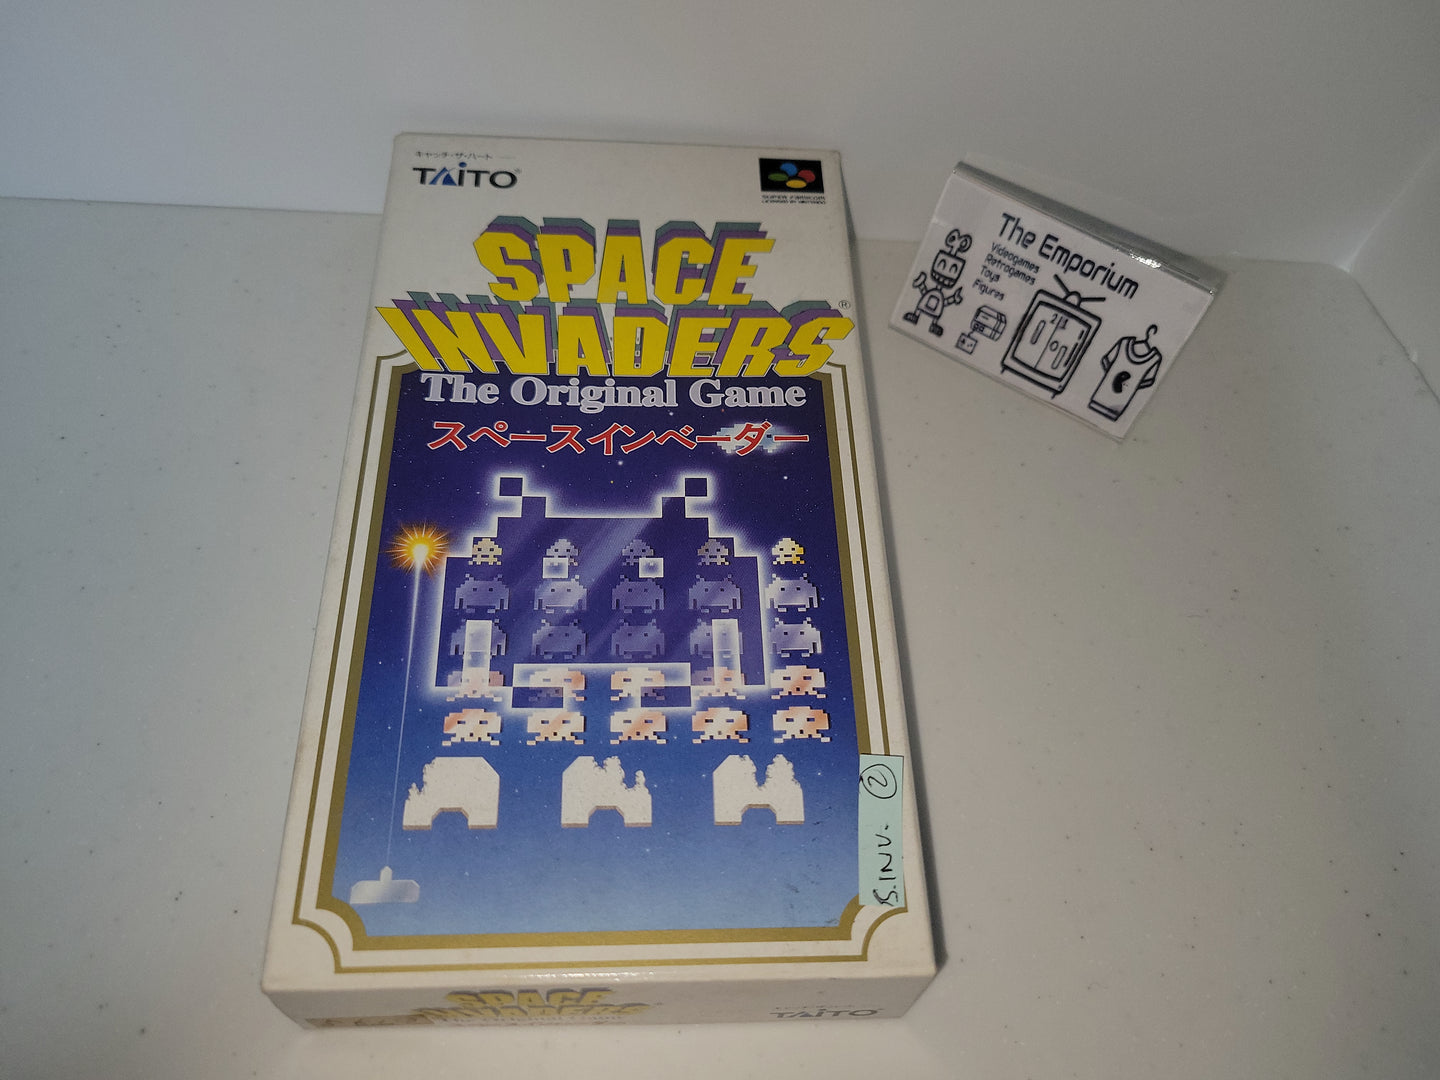 Space Invaders - The Original Game - Nintendo Sfc Super Famicom